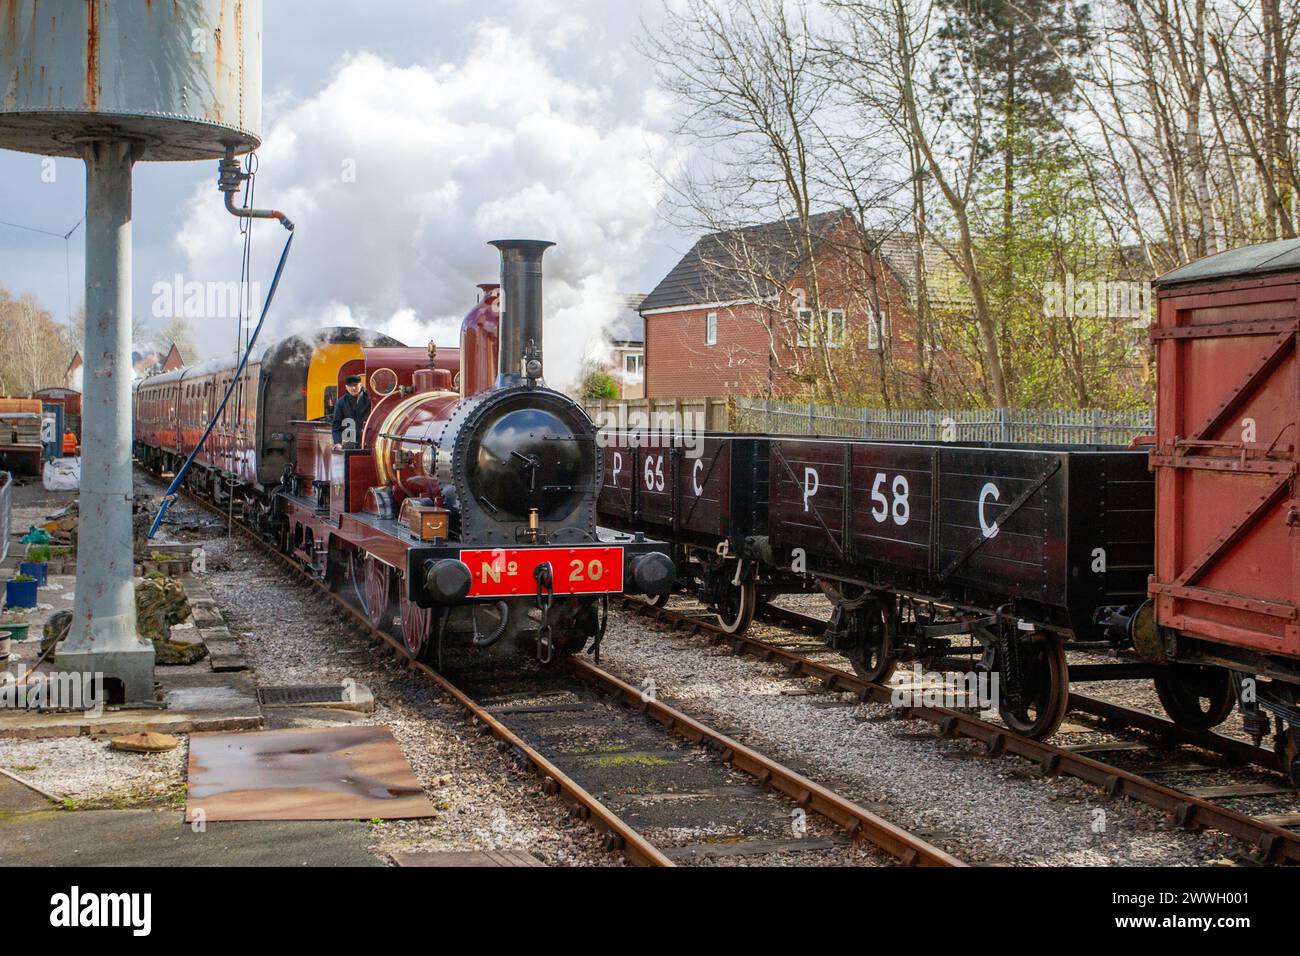 Furness Railway Number 20, 0-4-0 Tenderlokomotive, die Flaggschiff-Lokomotive des Furness Railway Trust. Ribble Steam Railway Heritage Trains fahren auf dem Anschlussgleis Preston, Großbritannien. Stockfoto